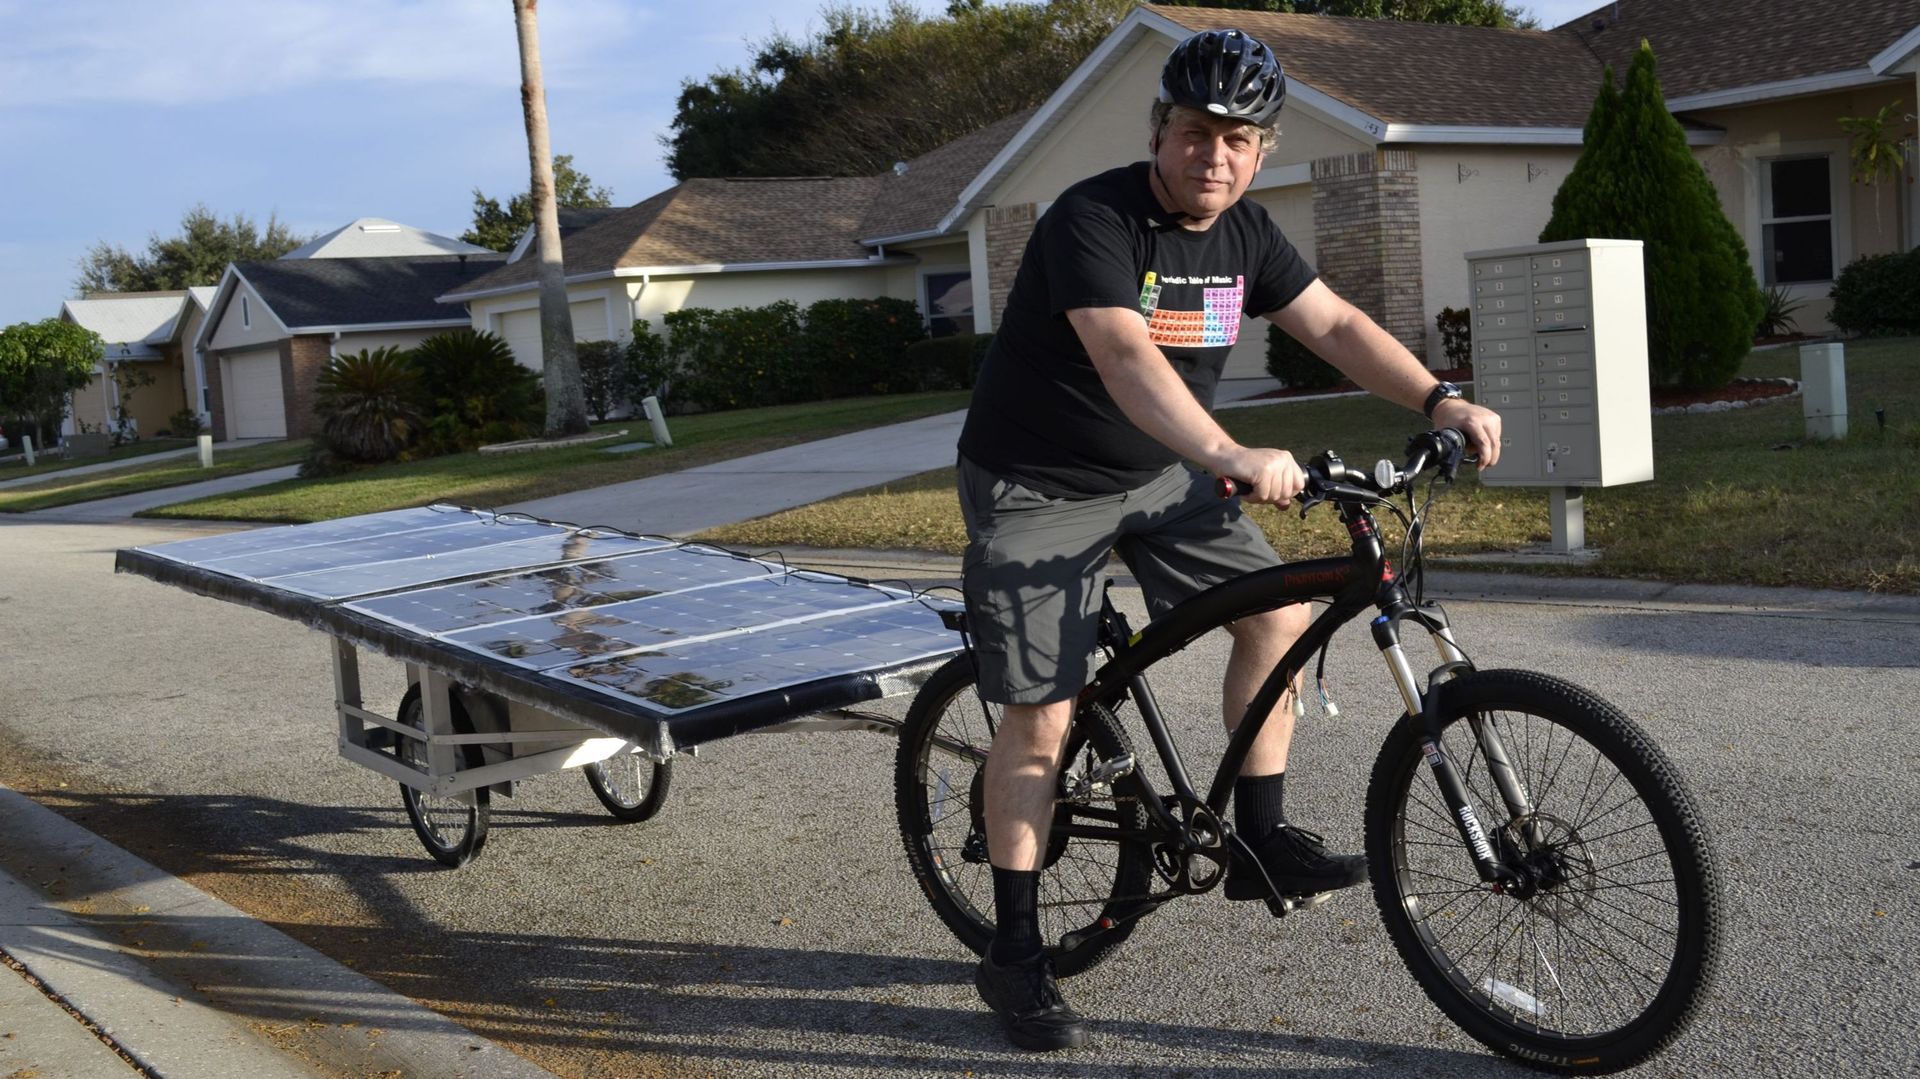 Michel va parcourir la ROUTE 66 sur un vélo 100% solaire ! 